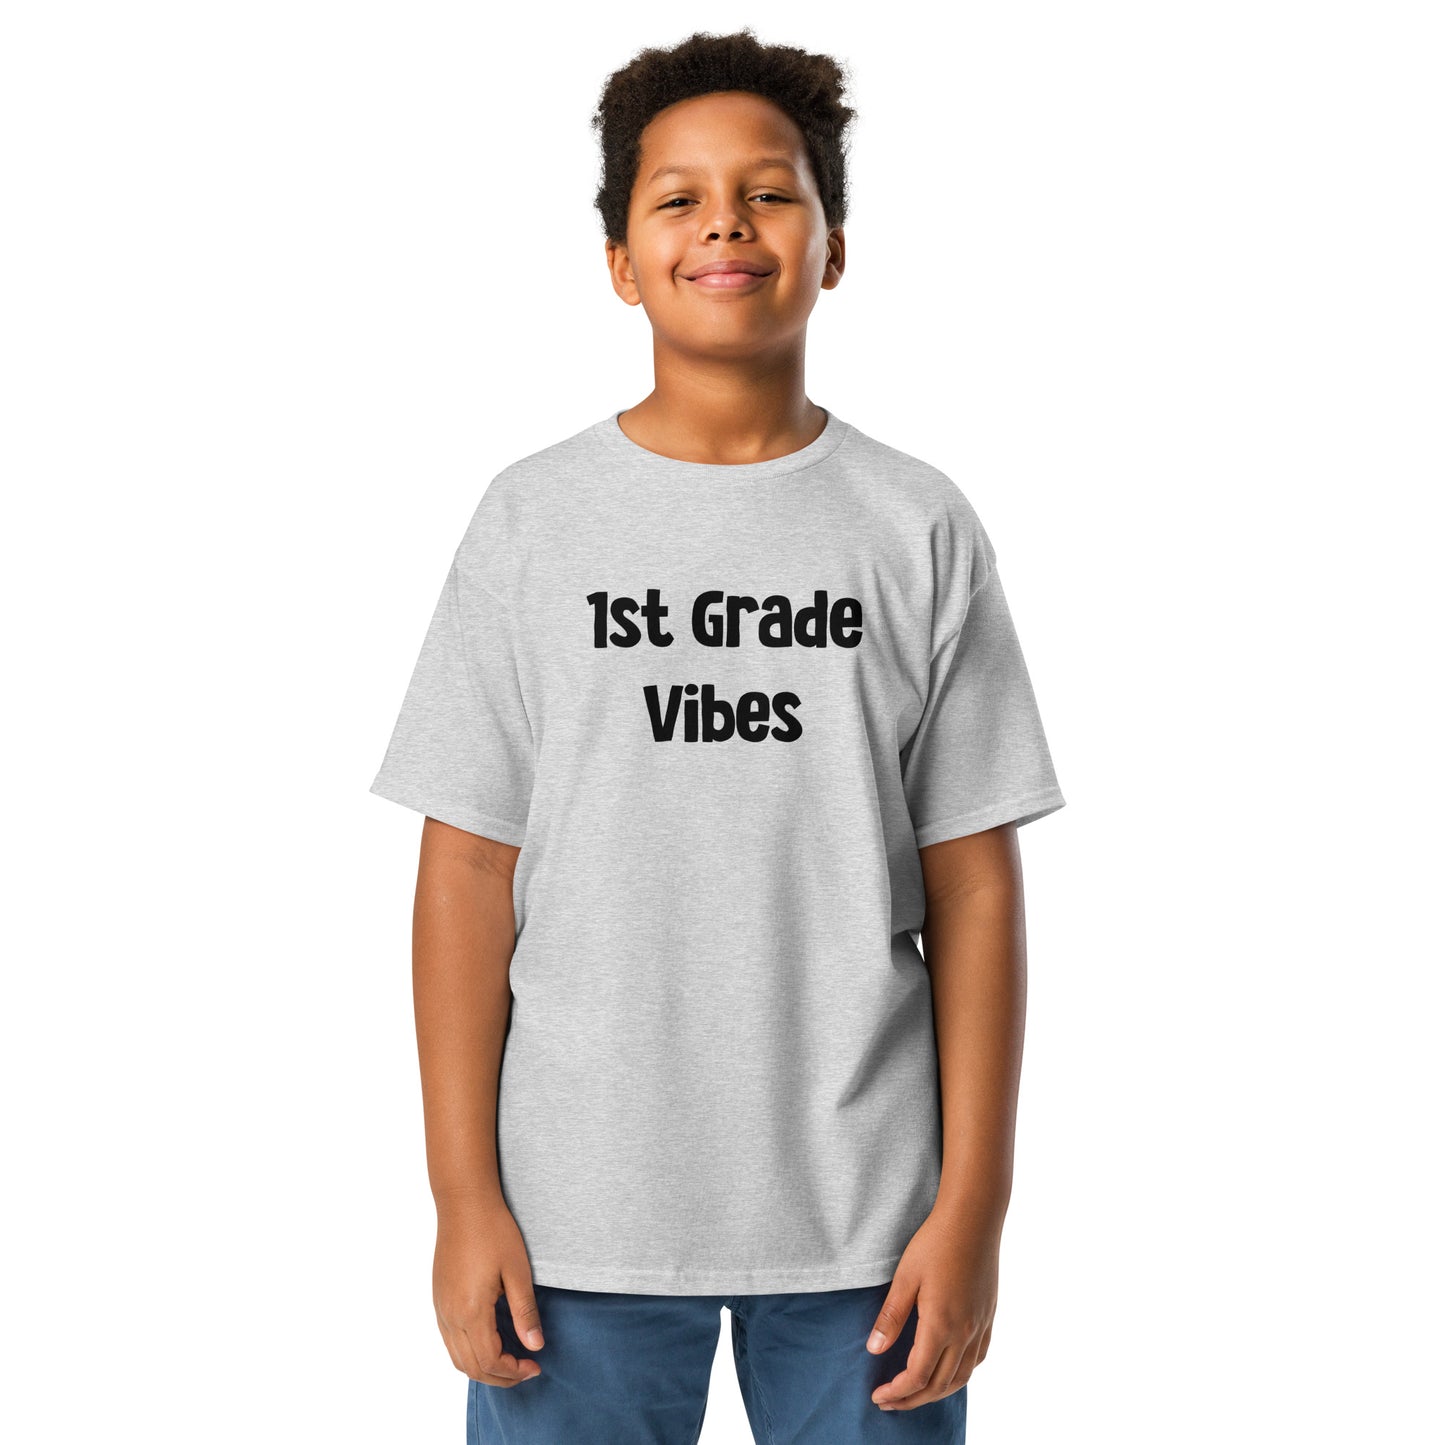 Kids 1st Grade Vibes T Shirt